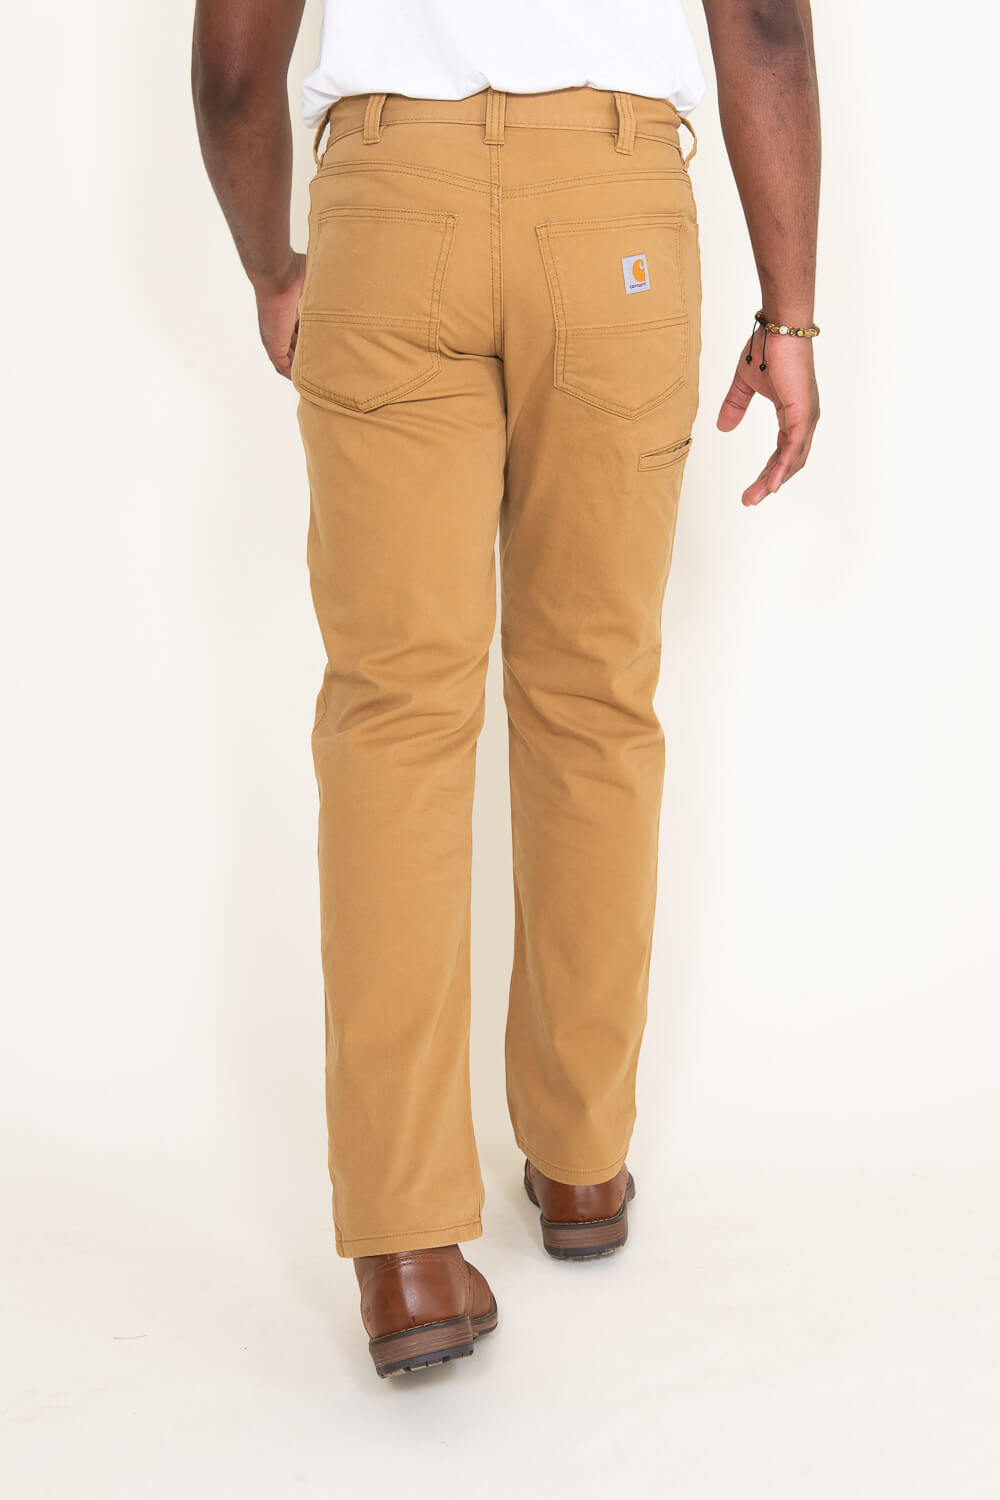 Carhartt Pants For Men - Pants Store